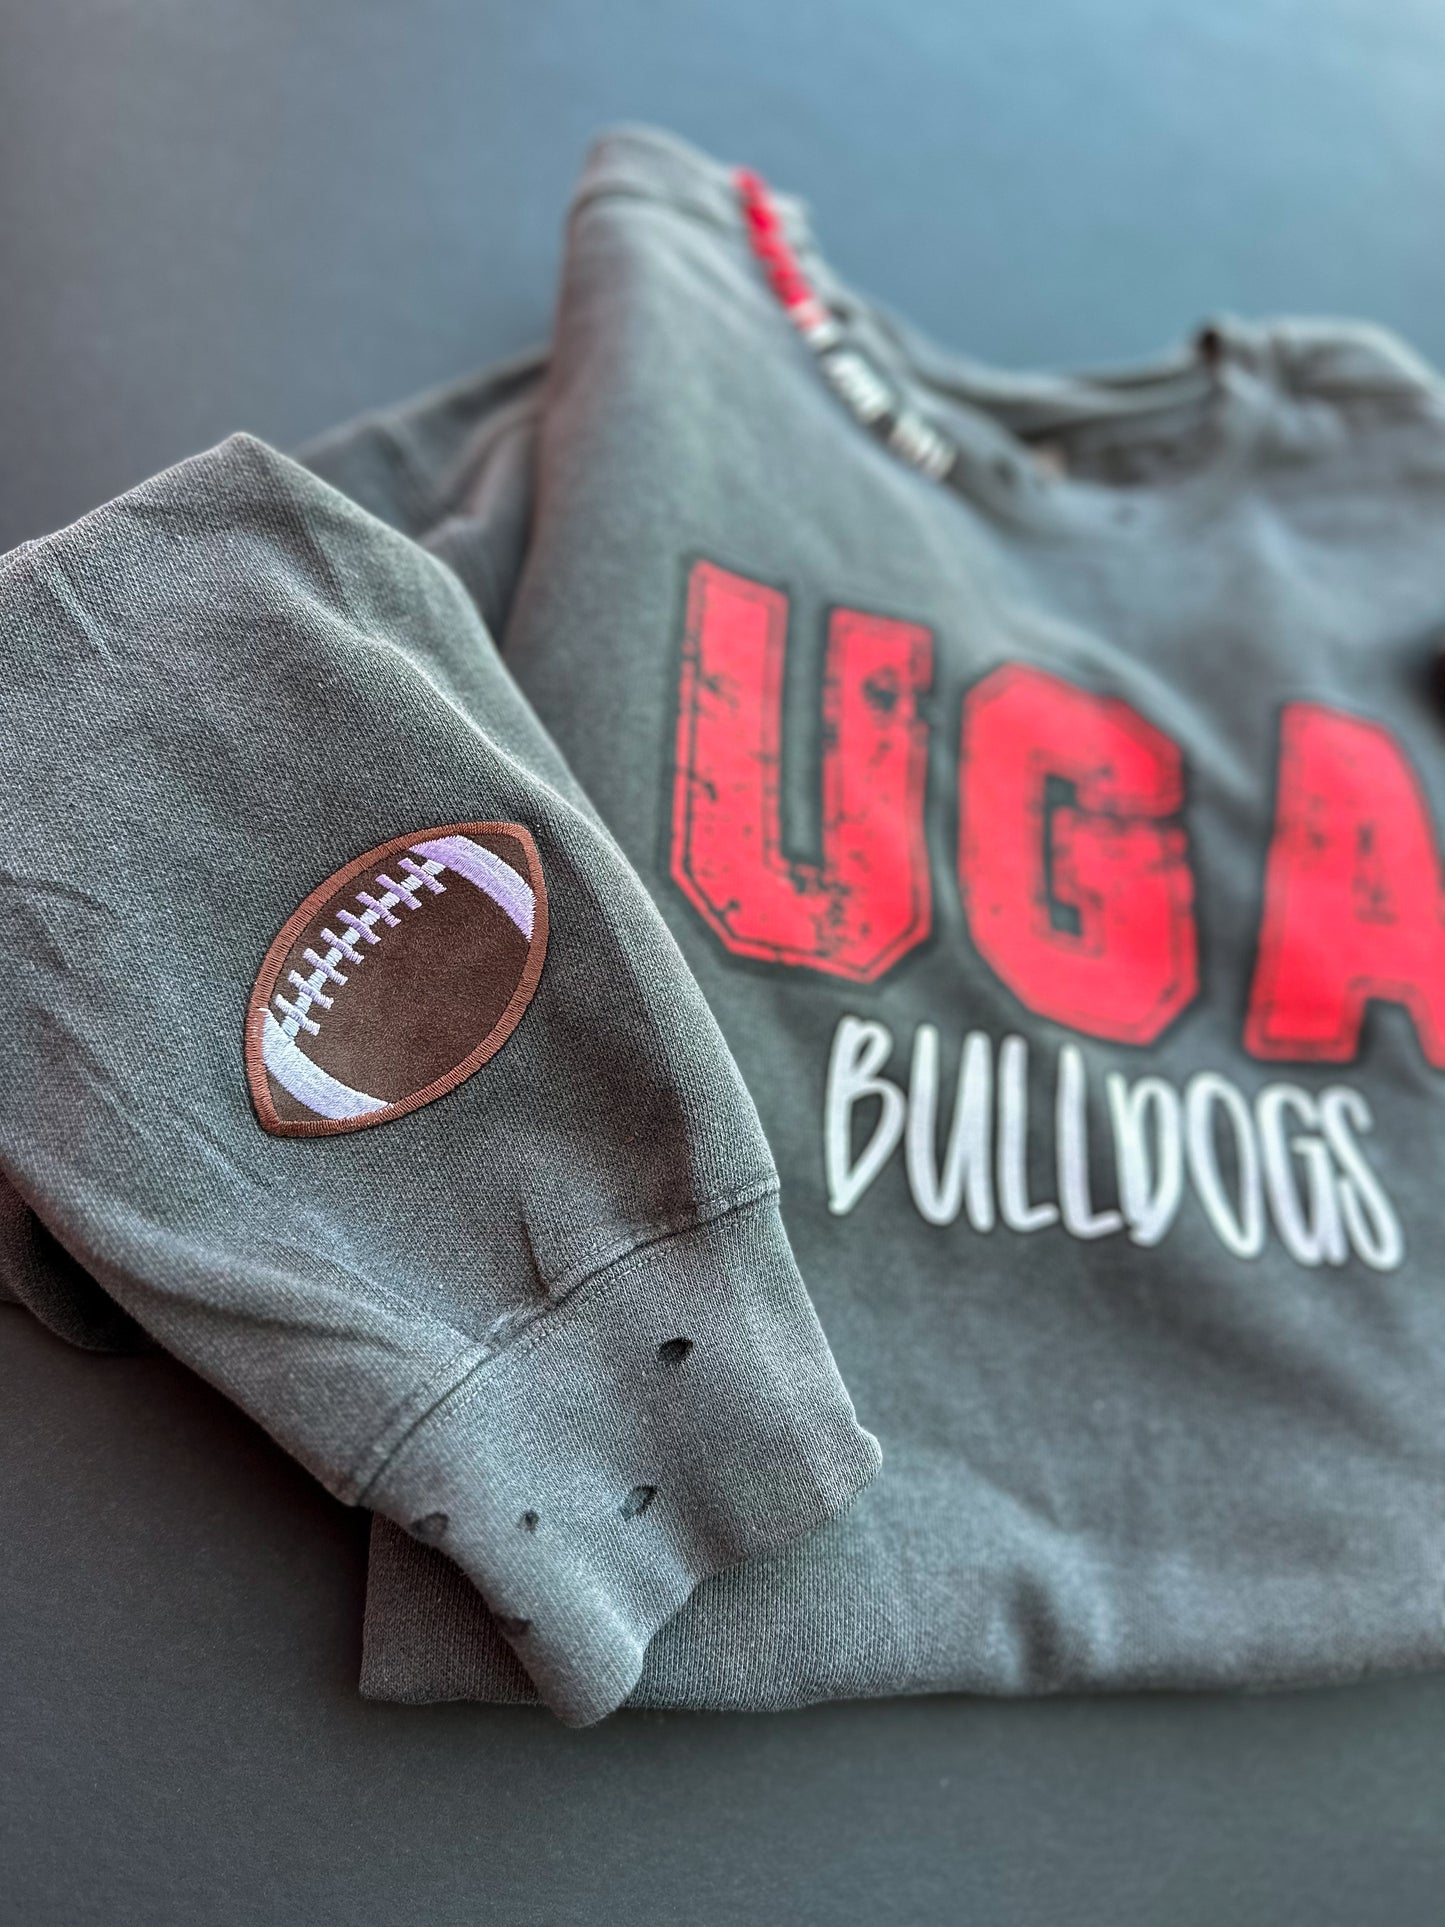 Vintage UGA Sweatshirt